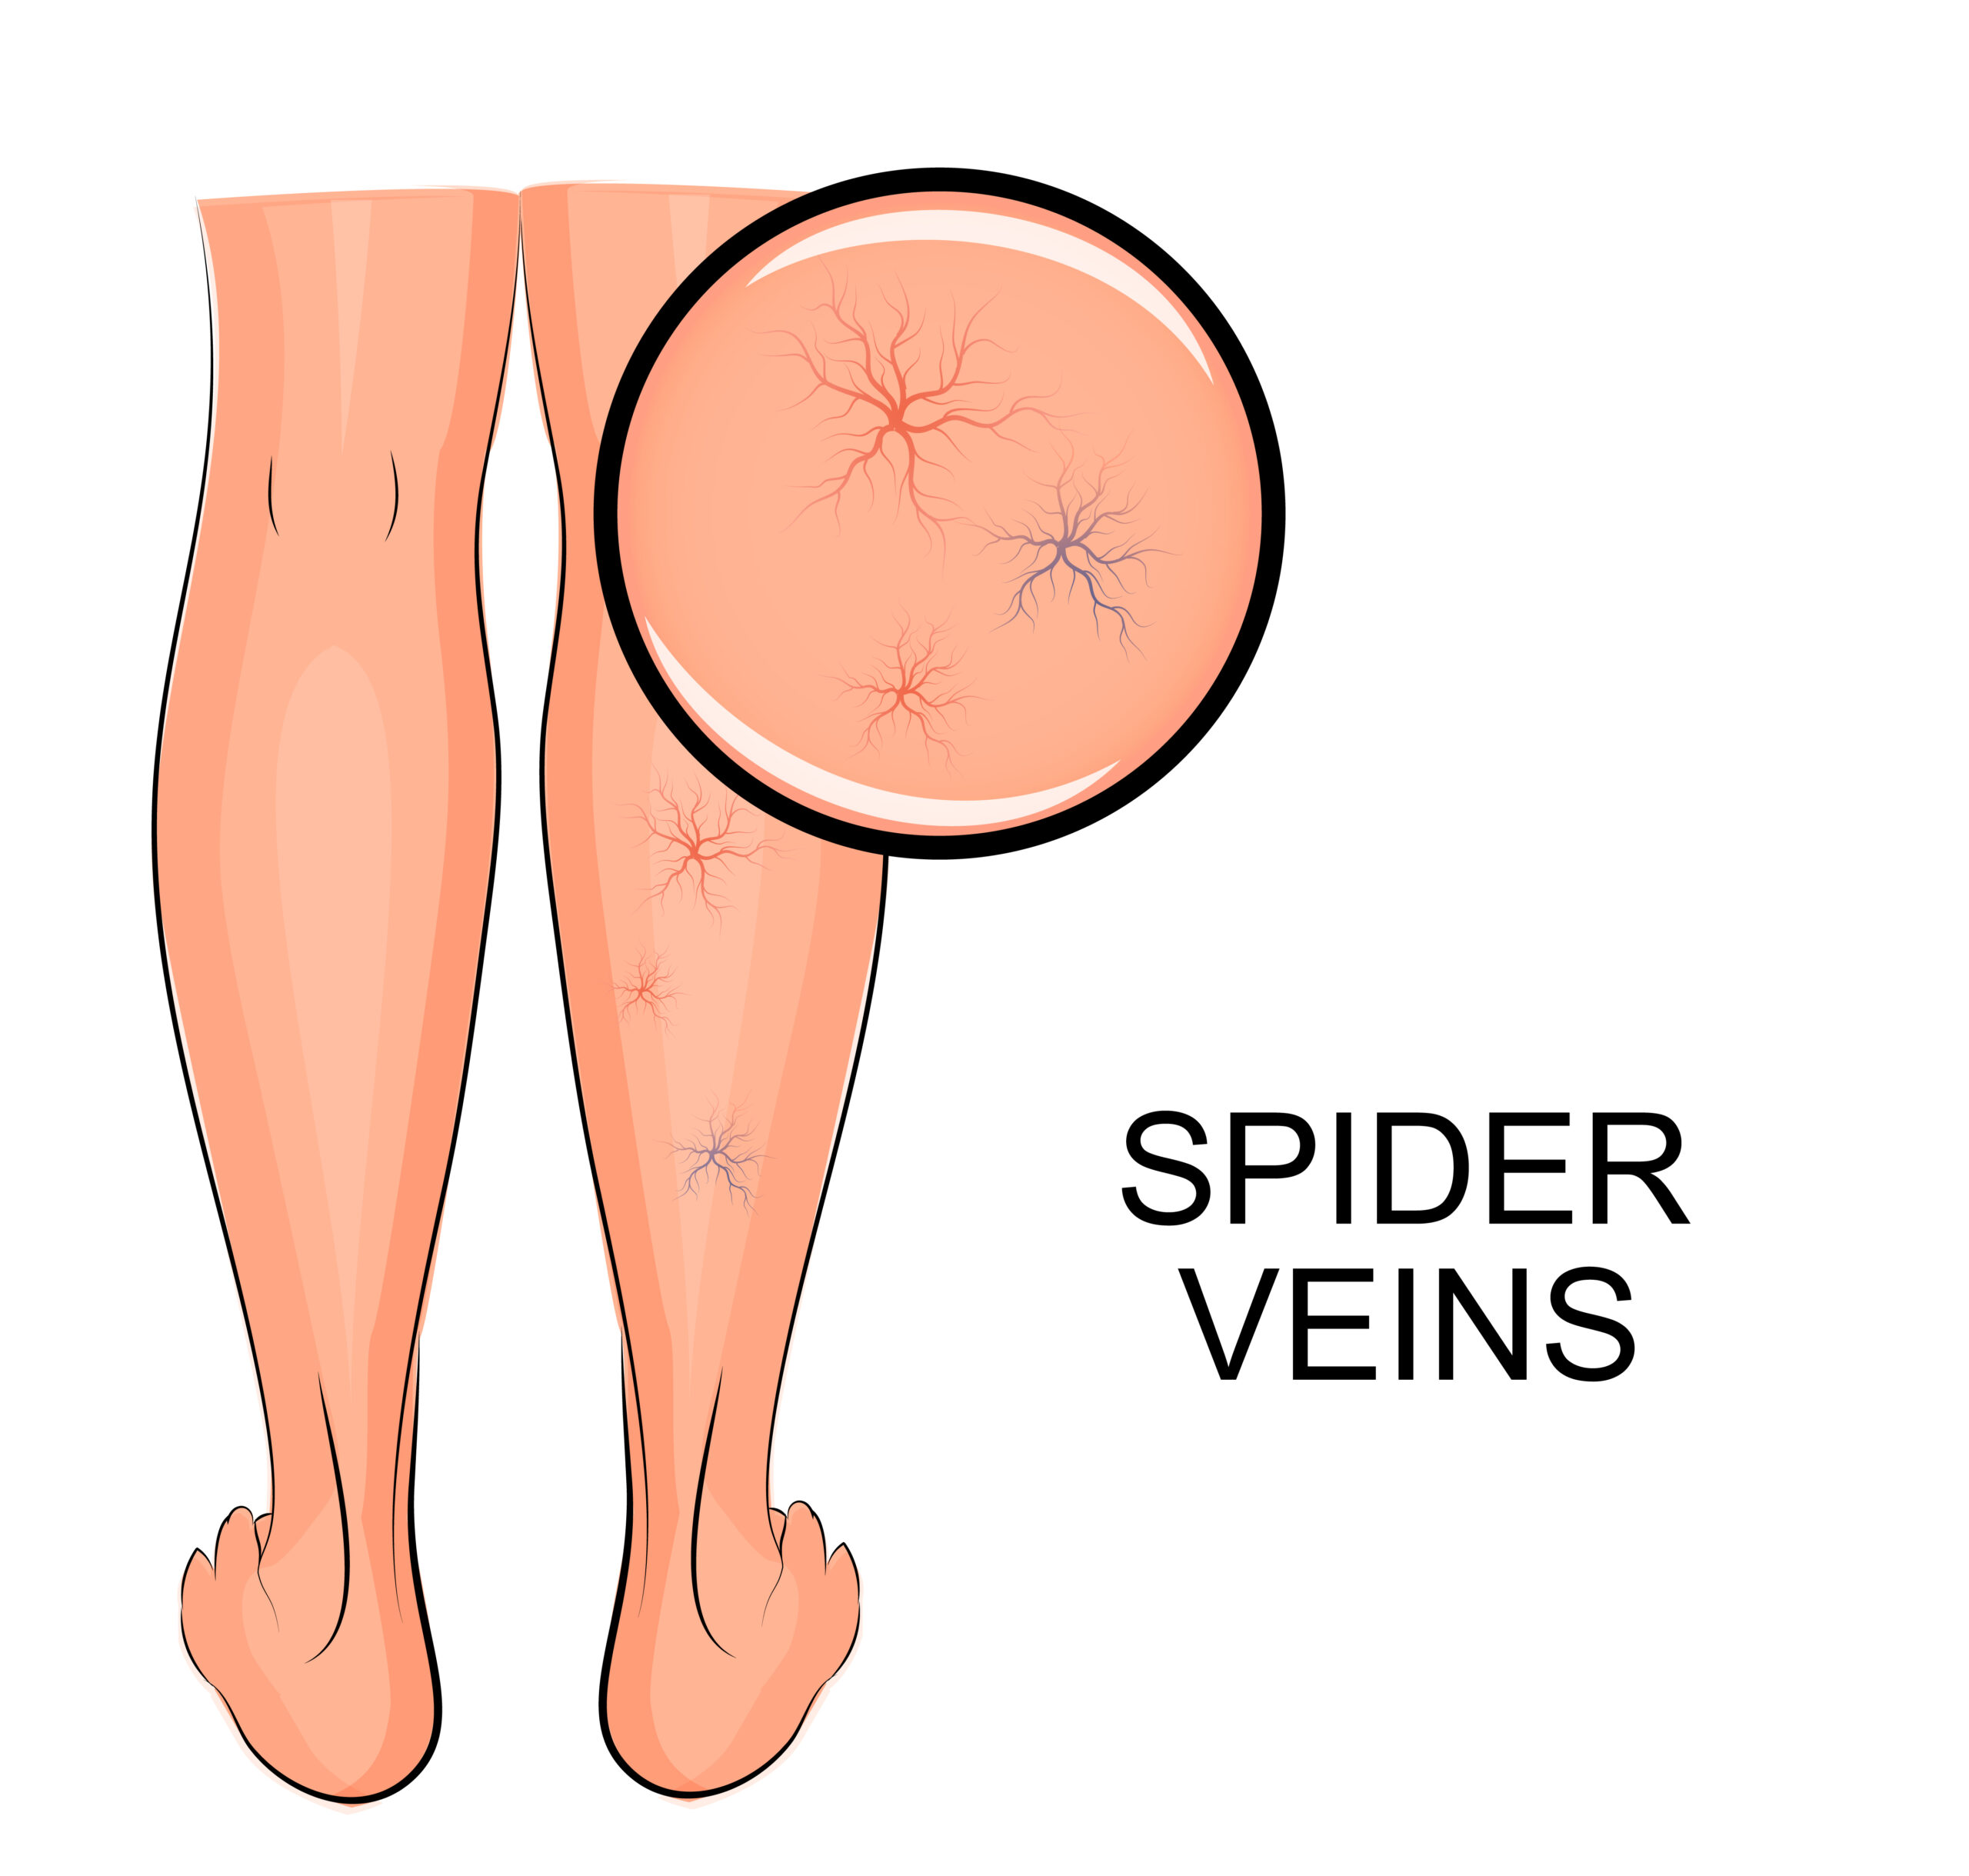 spider veins graphic.